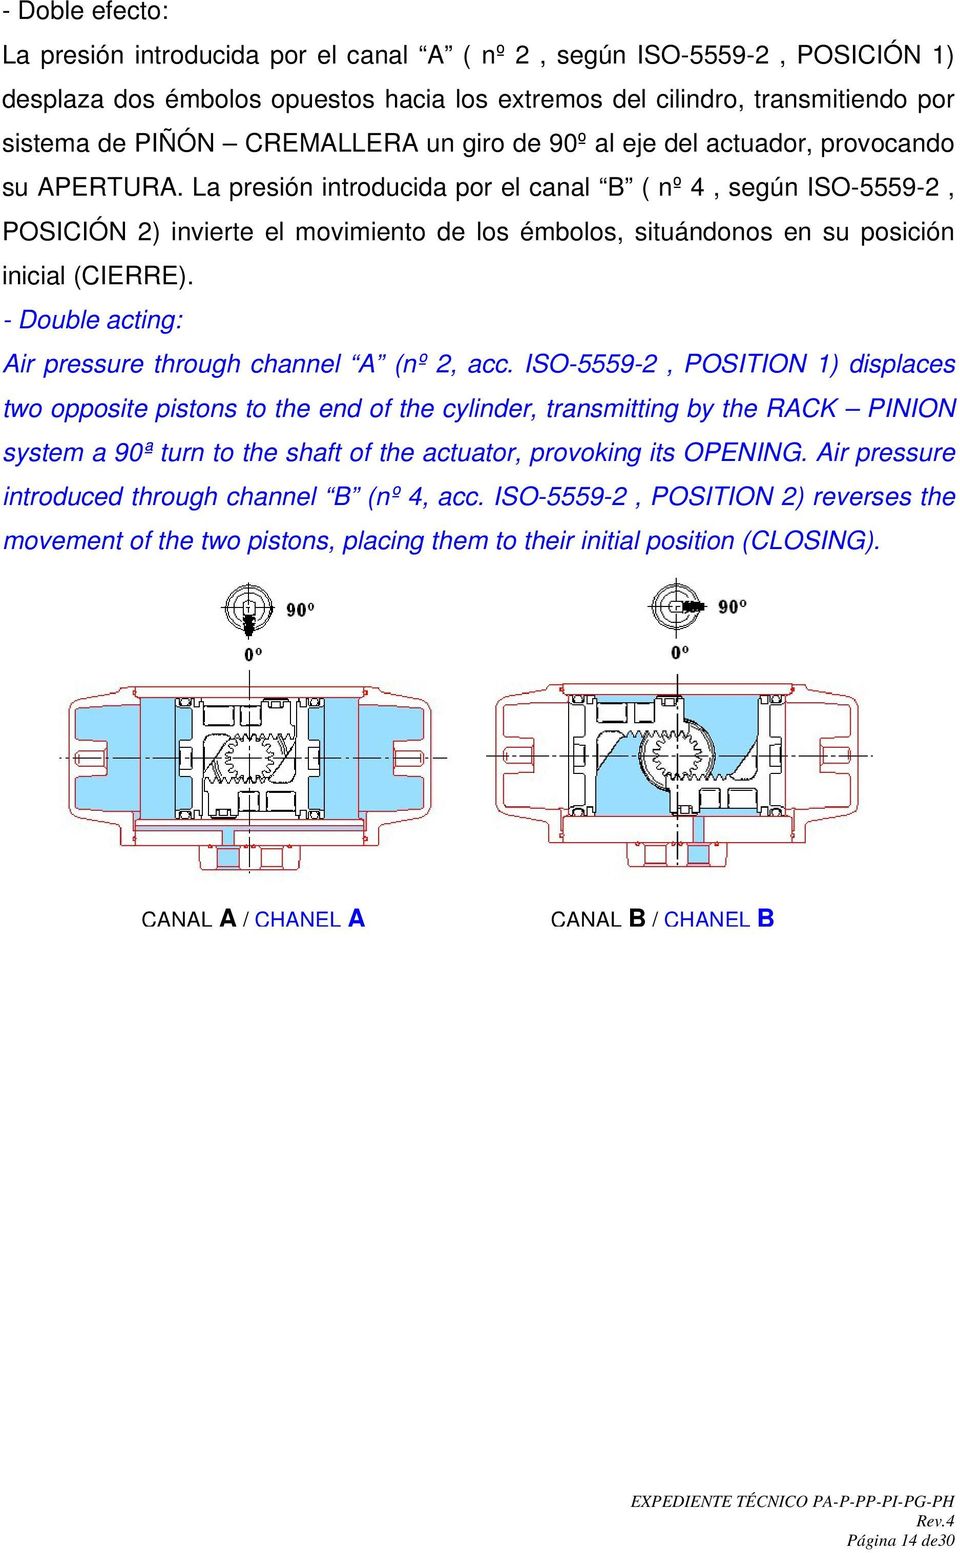 La presión introducida por el canal B ( nº 4, según ISO-5559-2, POSICIÓN 2) invierte el movimiento de los émbolos, situándonos en su posición inicial (CIERRE).